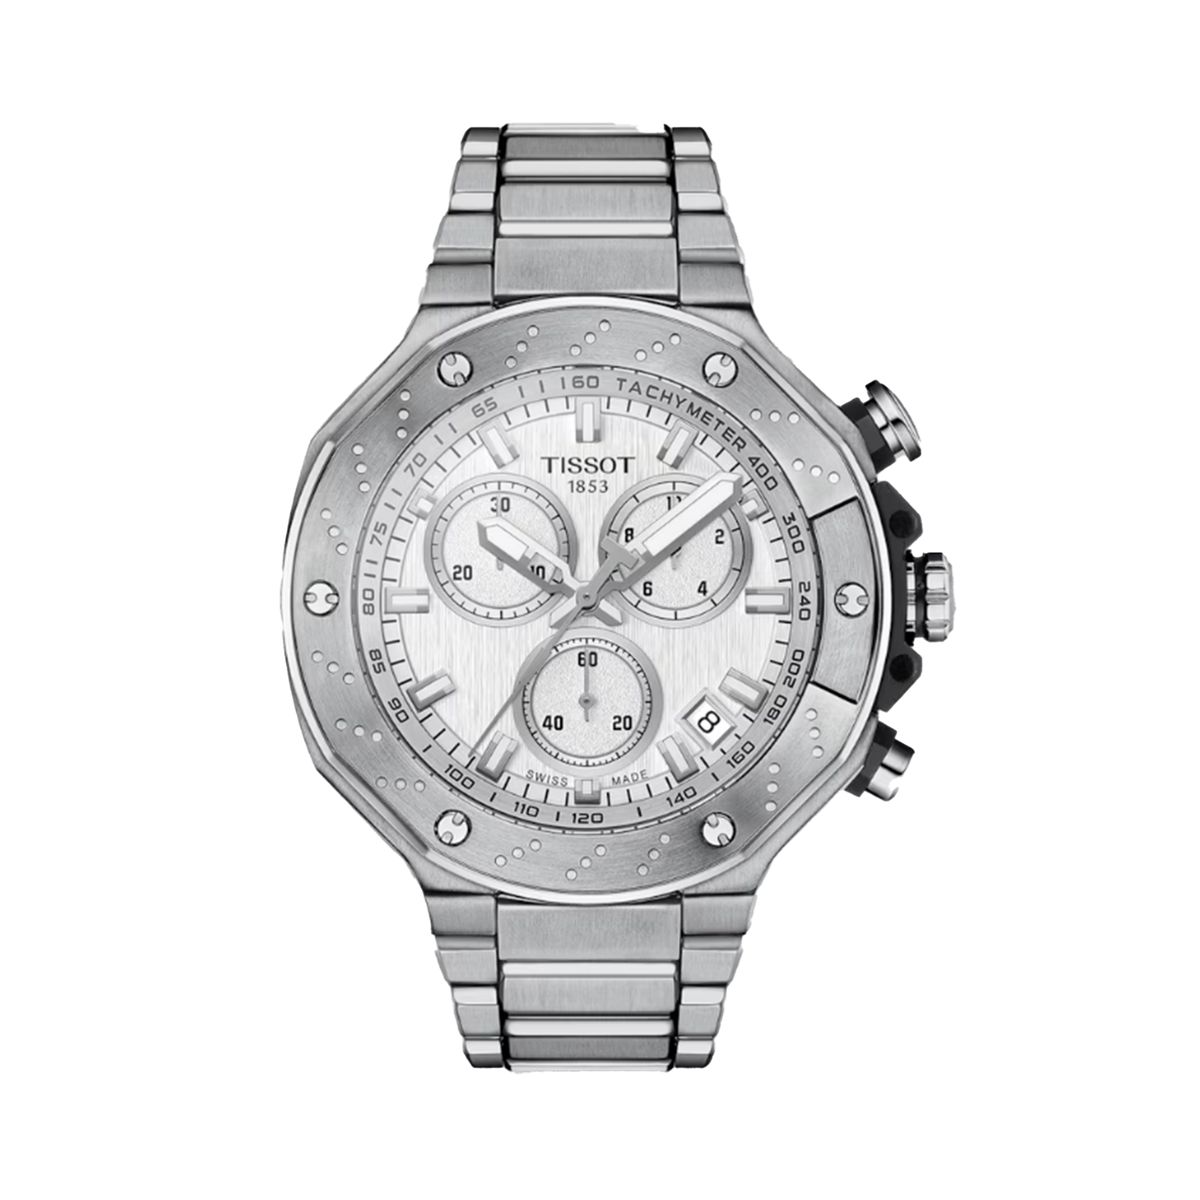 Tissot T-Race Men's 45mm Quartz Chronograph Limited Edition Watch T141.417.11.031.00